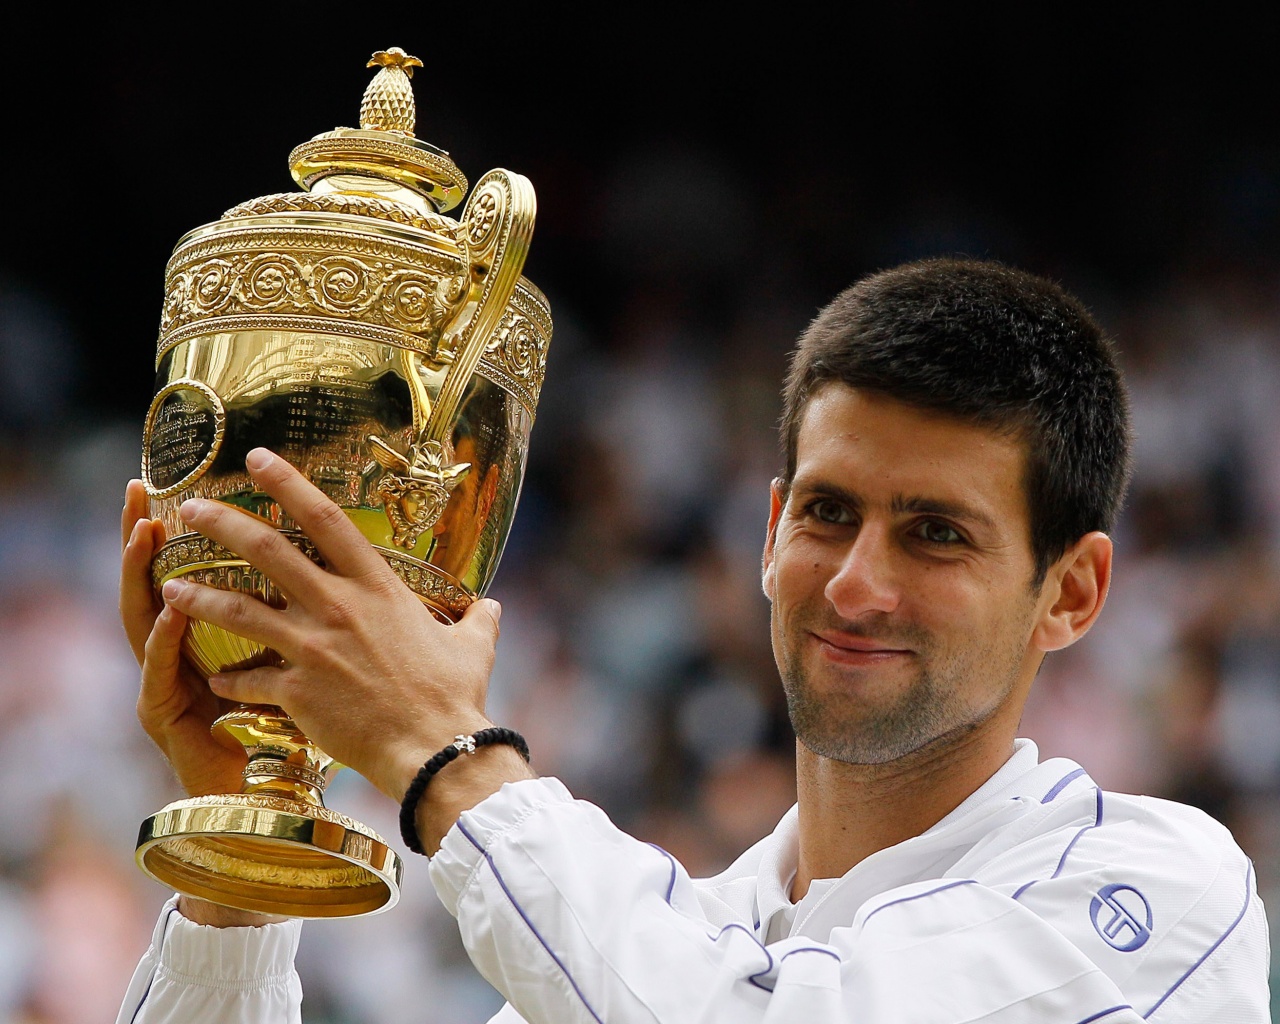 Djokovic - Championships Wimbledon